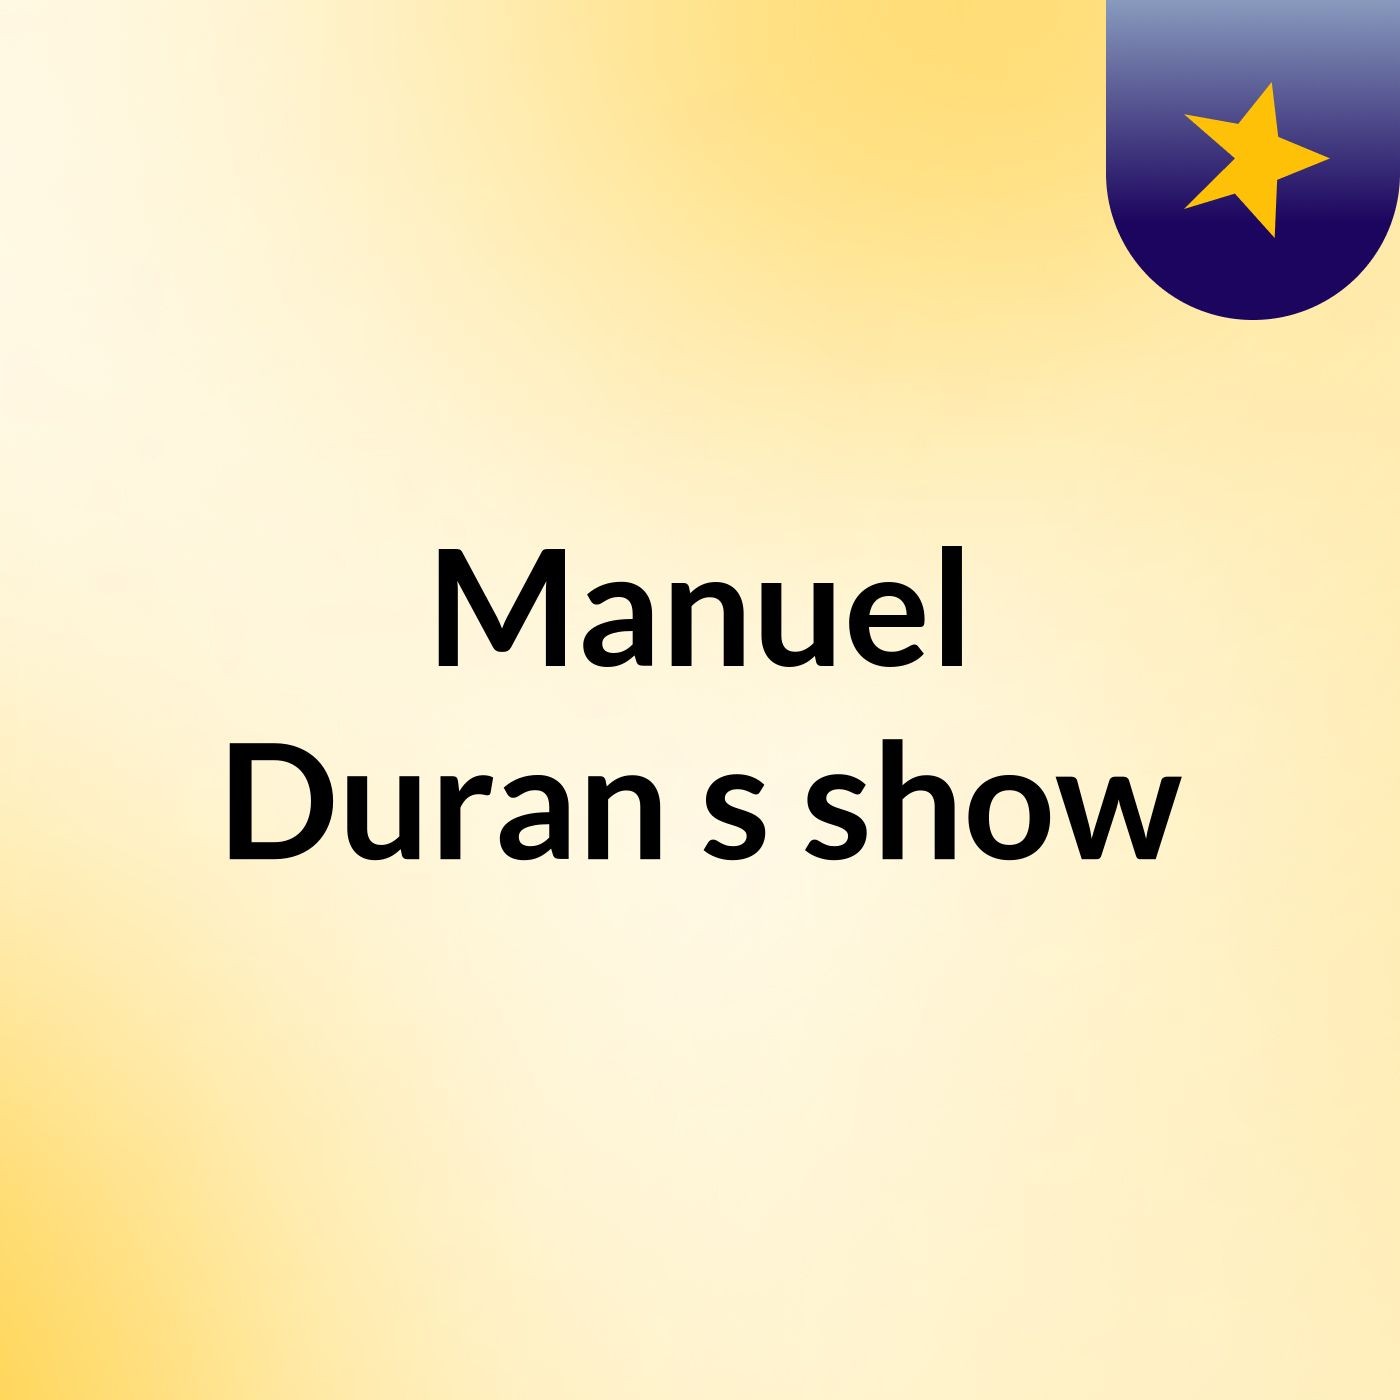 Manuel Duran's show